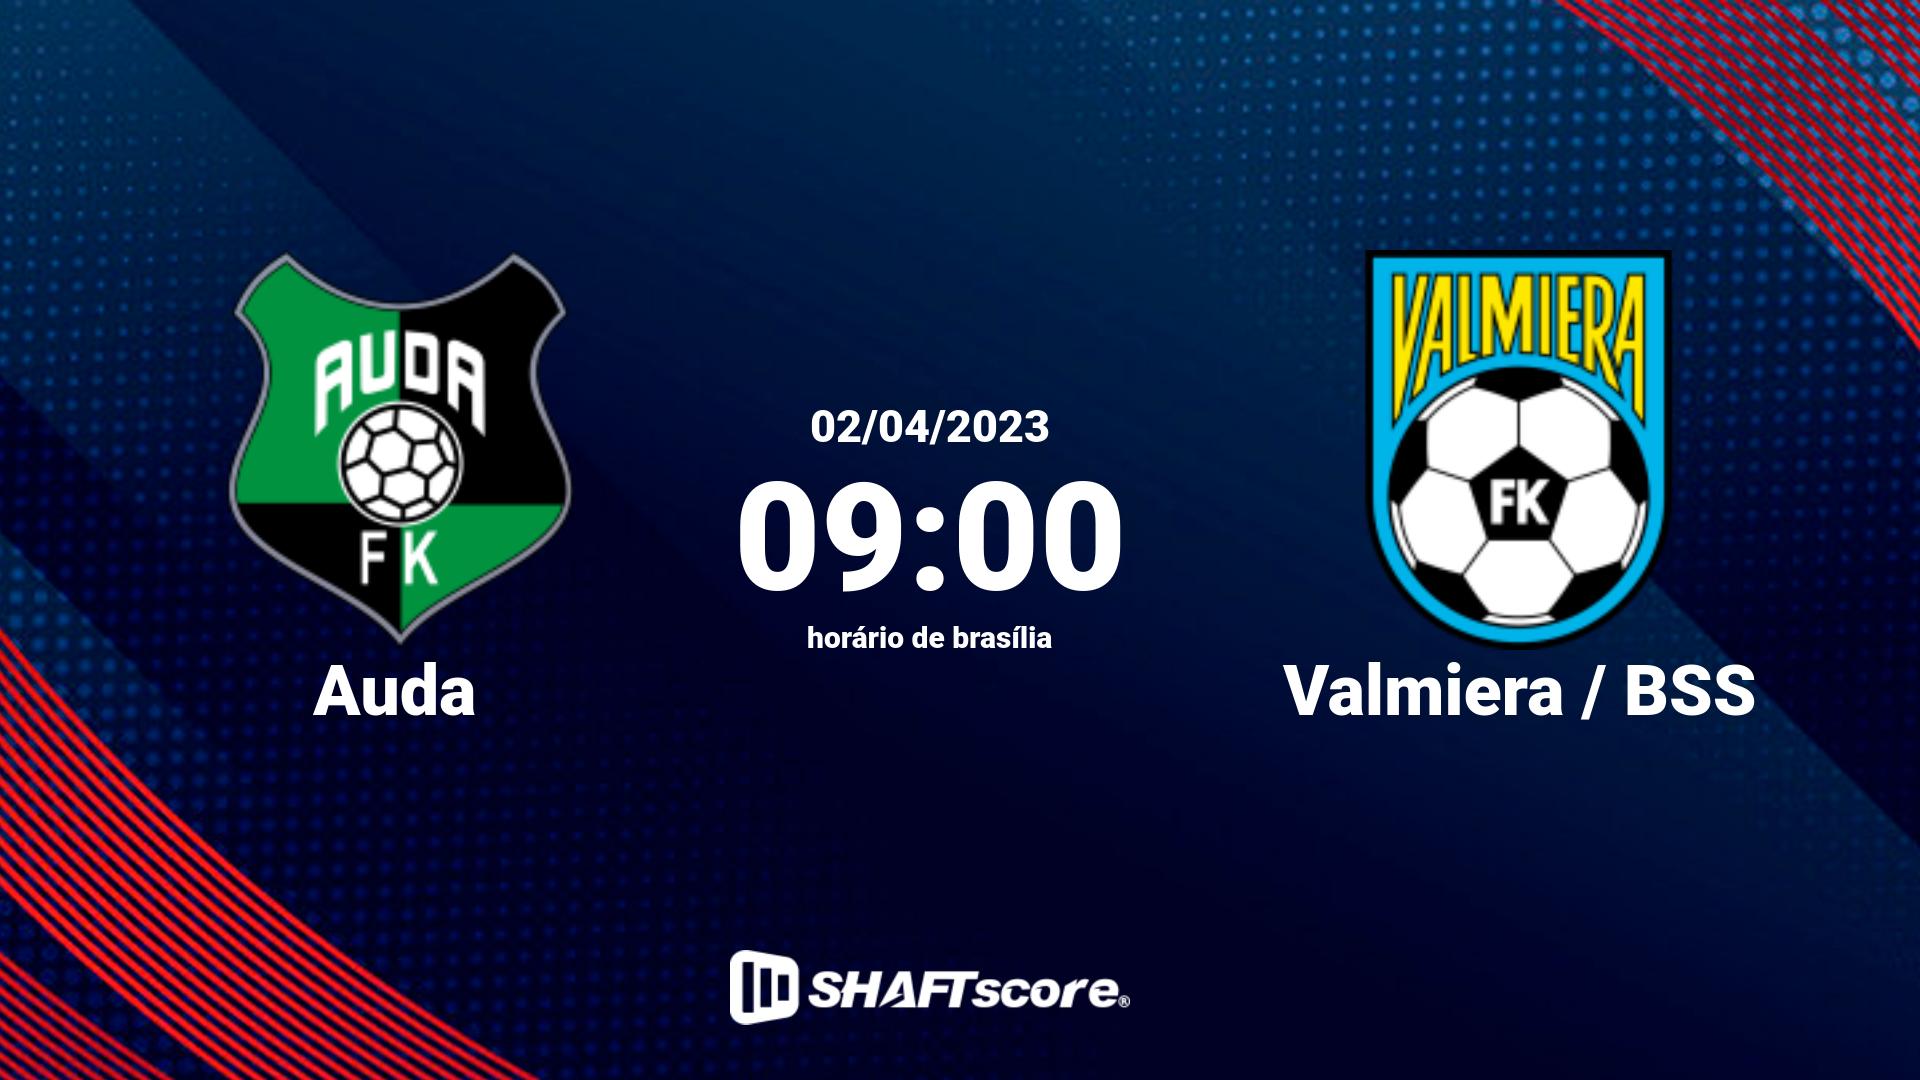 Estatísticas do jogo Auda vs Valmiera / BSS 02.04 09:00